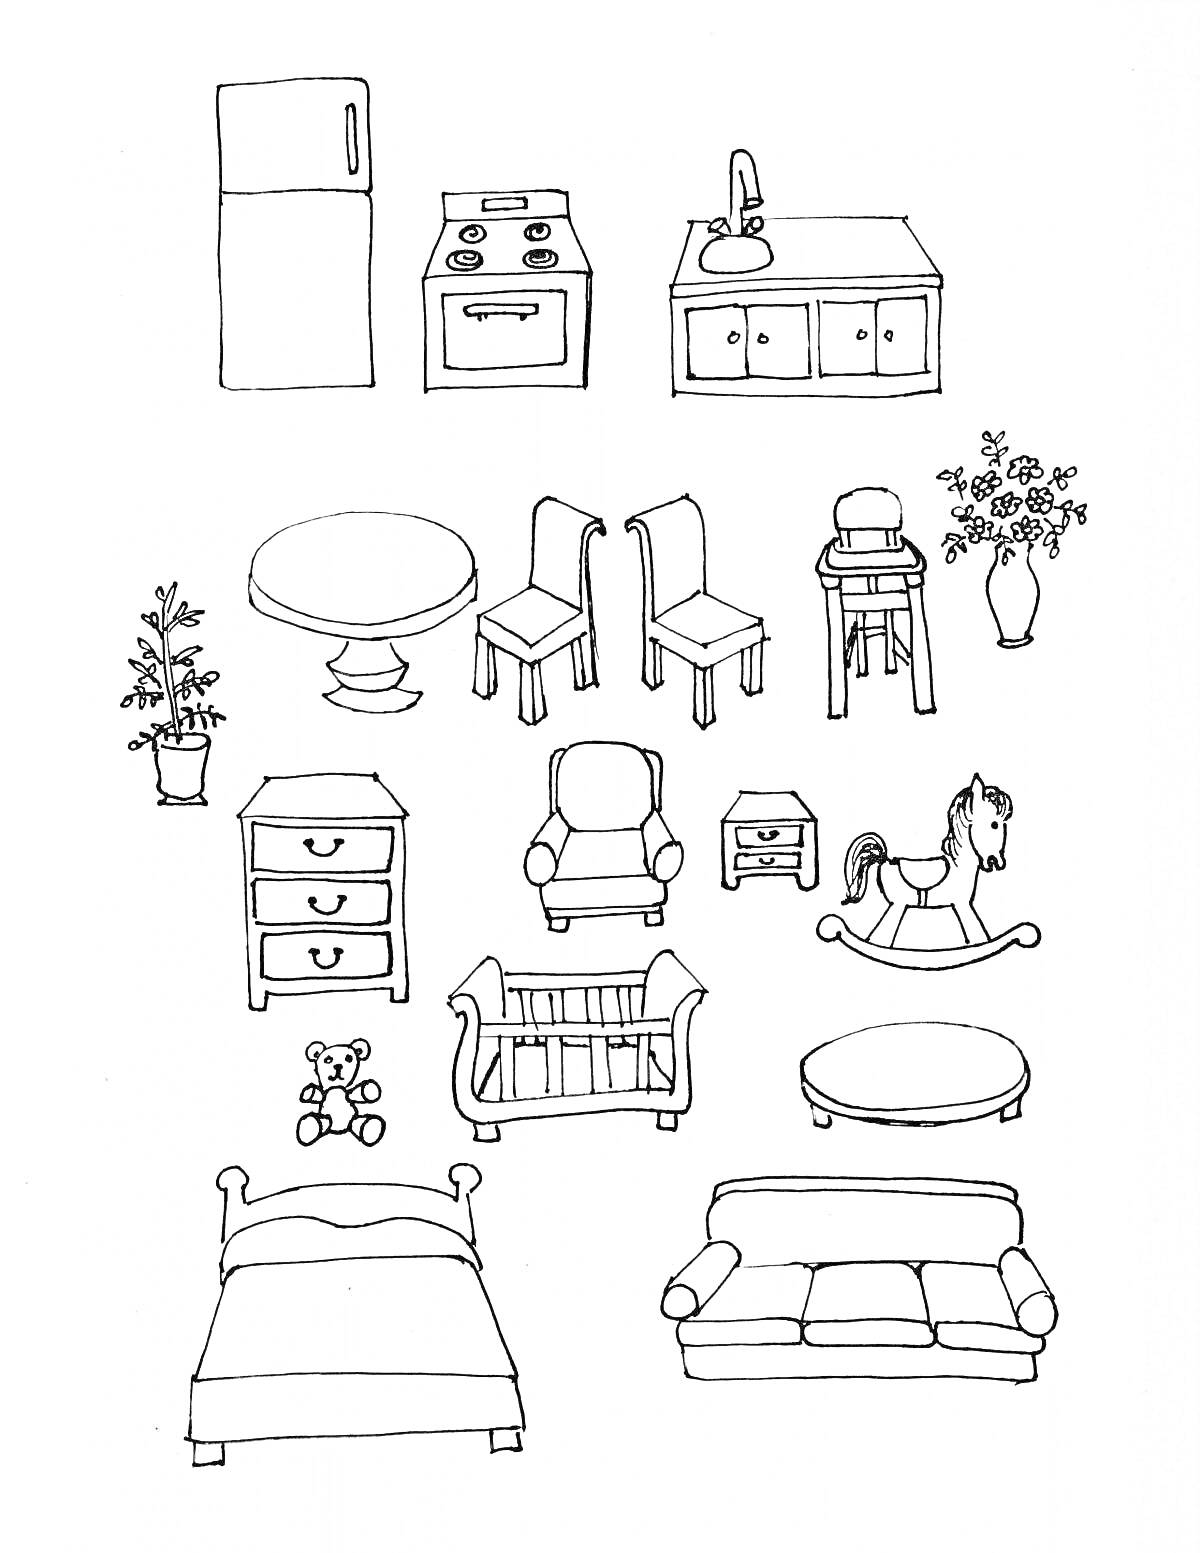 Мебель и предметы интерьера: холодильник, плита, кухня с раковиной, круглый стол, два стула, высокий стул, ваза с цветами, растение в горшке, комод, кресло, кроватка, качалка-лошадка, мягкая игрушка, кровать, диван.